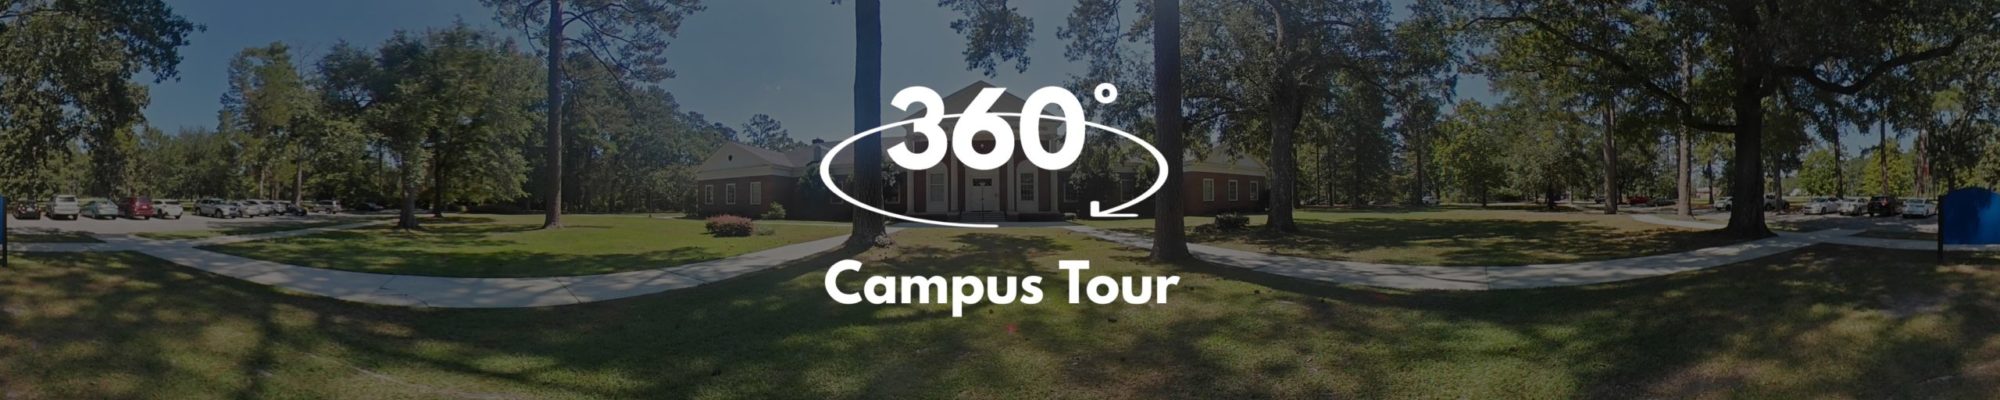 360° campus tour